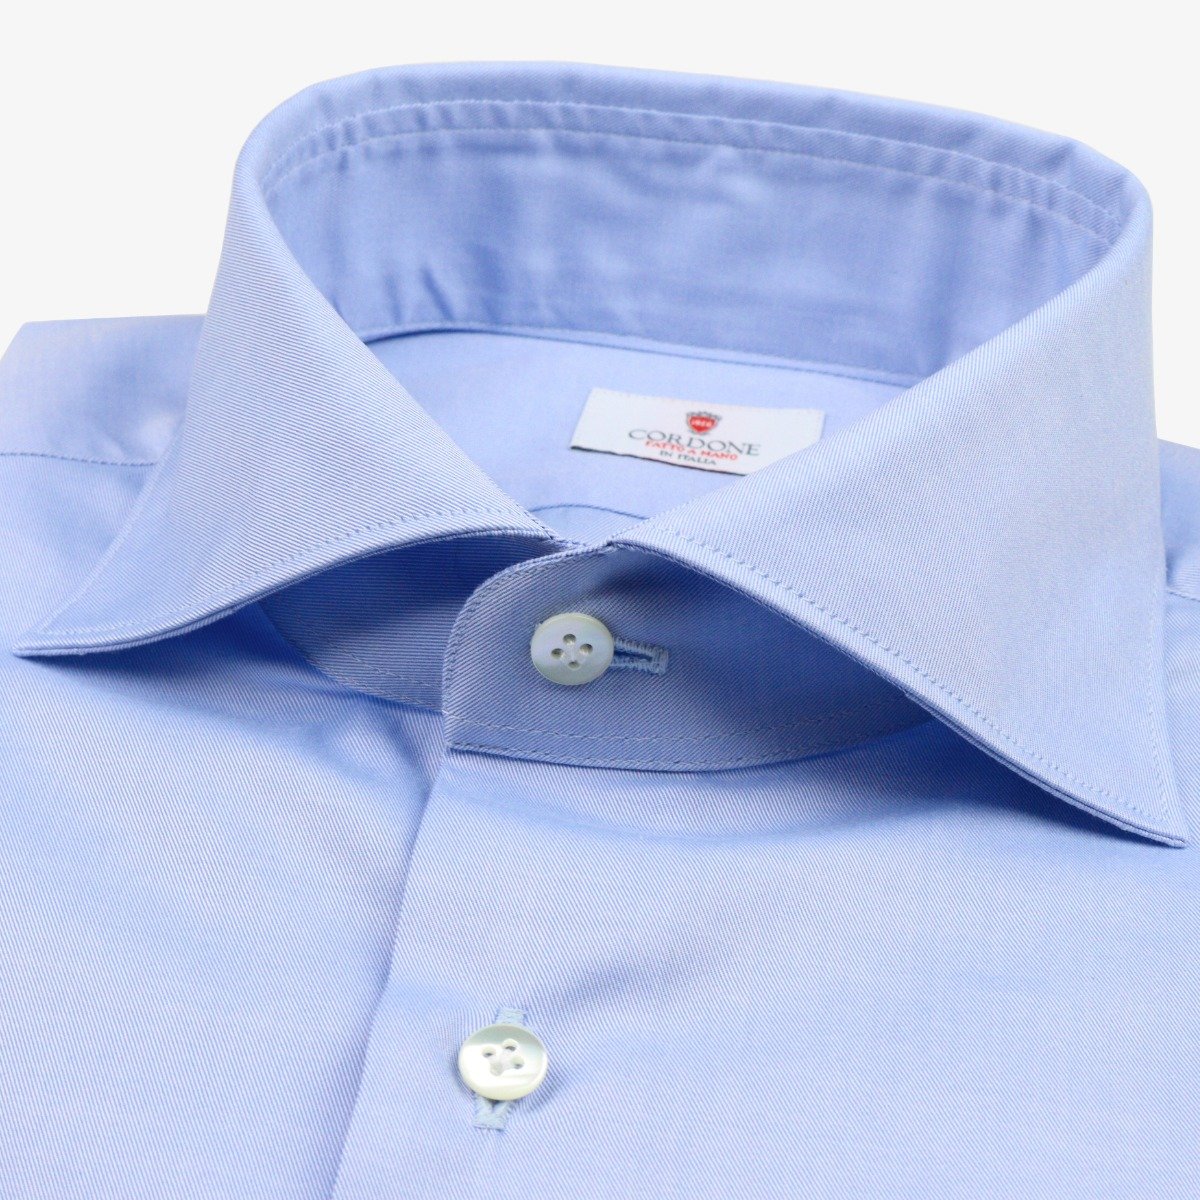 Cordone 1956 light blue slim fit twill shirt II